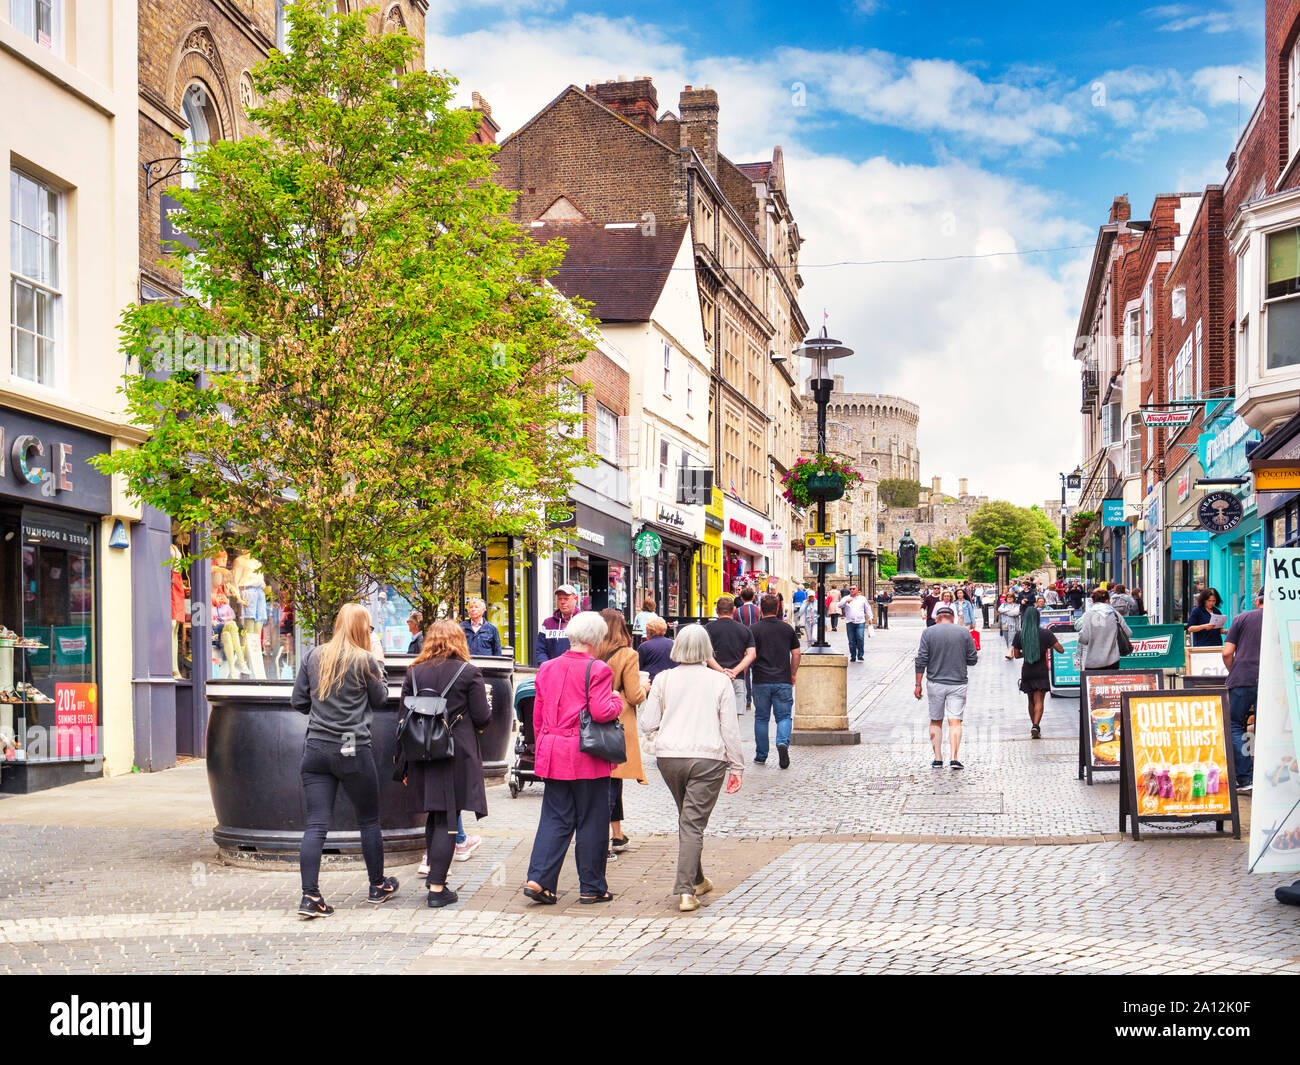 5 juin 2019 : Windsor, Berkshire, UK - Consommateurs et aux touristes dans Peascod Street, la principale rue commerçante de la ville, avec le château de Windsor dans le haut... Banque D'Images